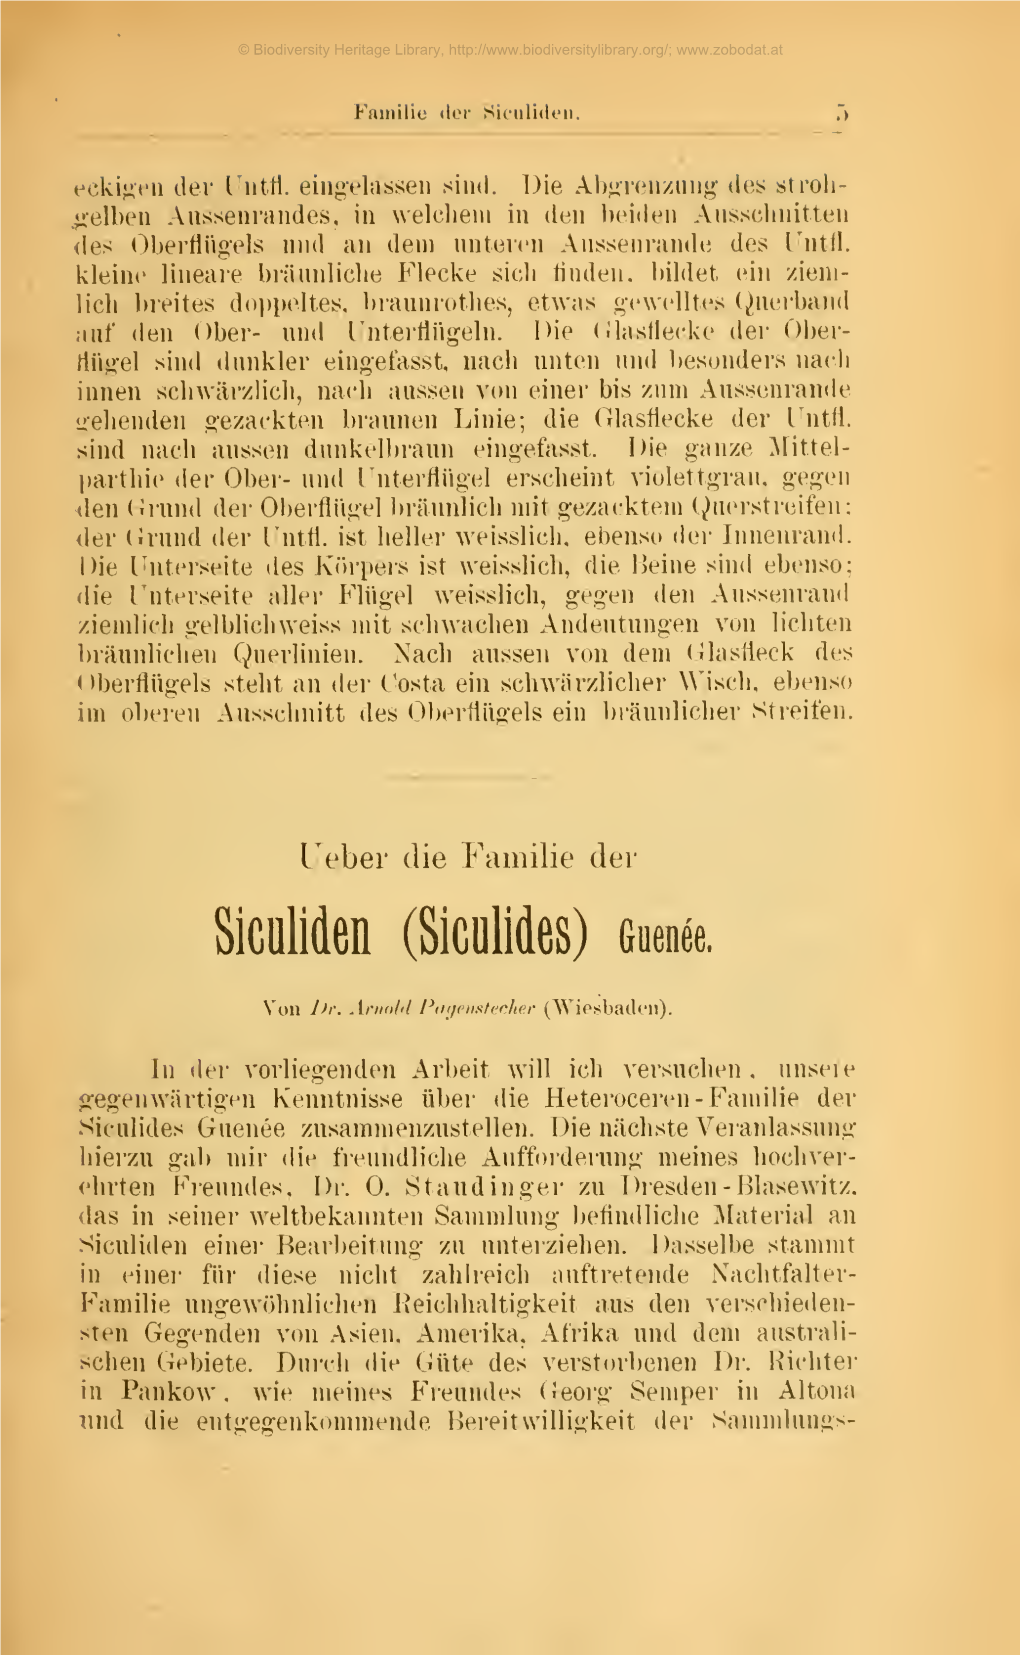 Deutsche Entomologische Zeitscrift